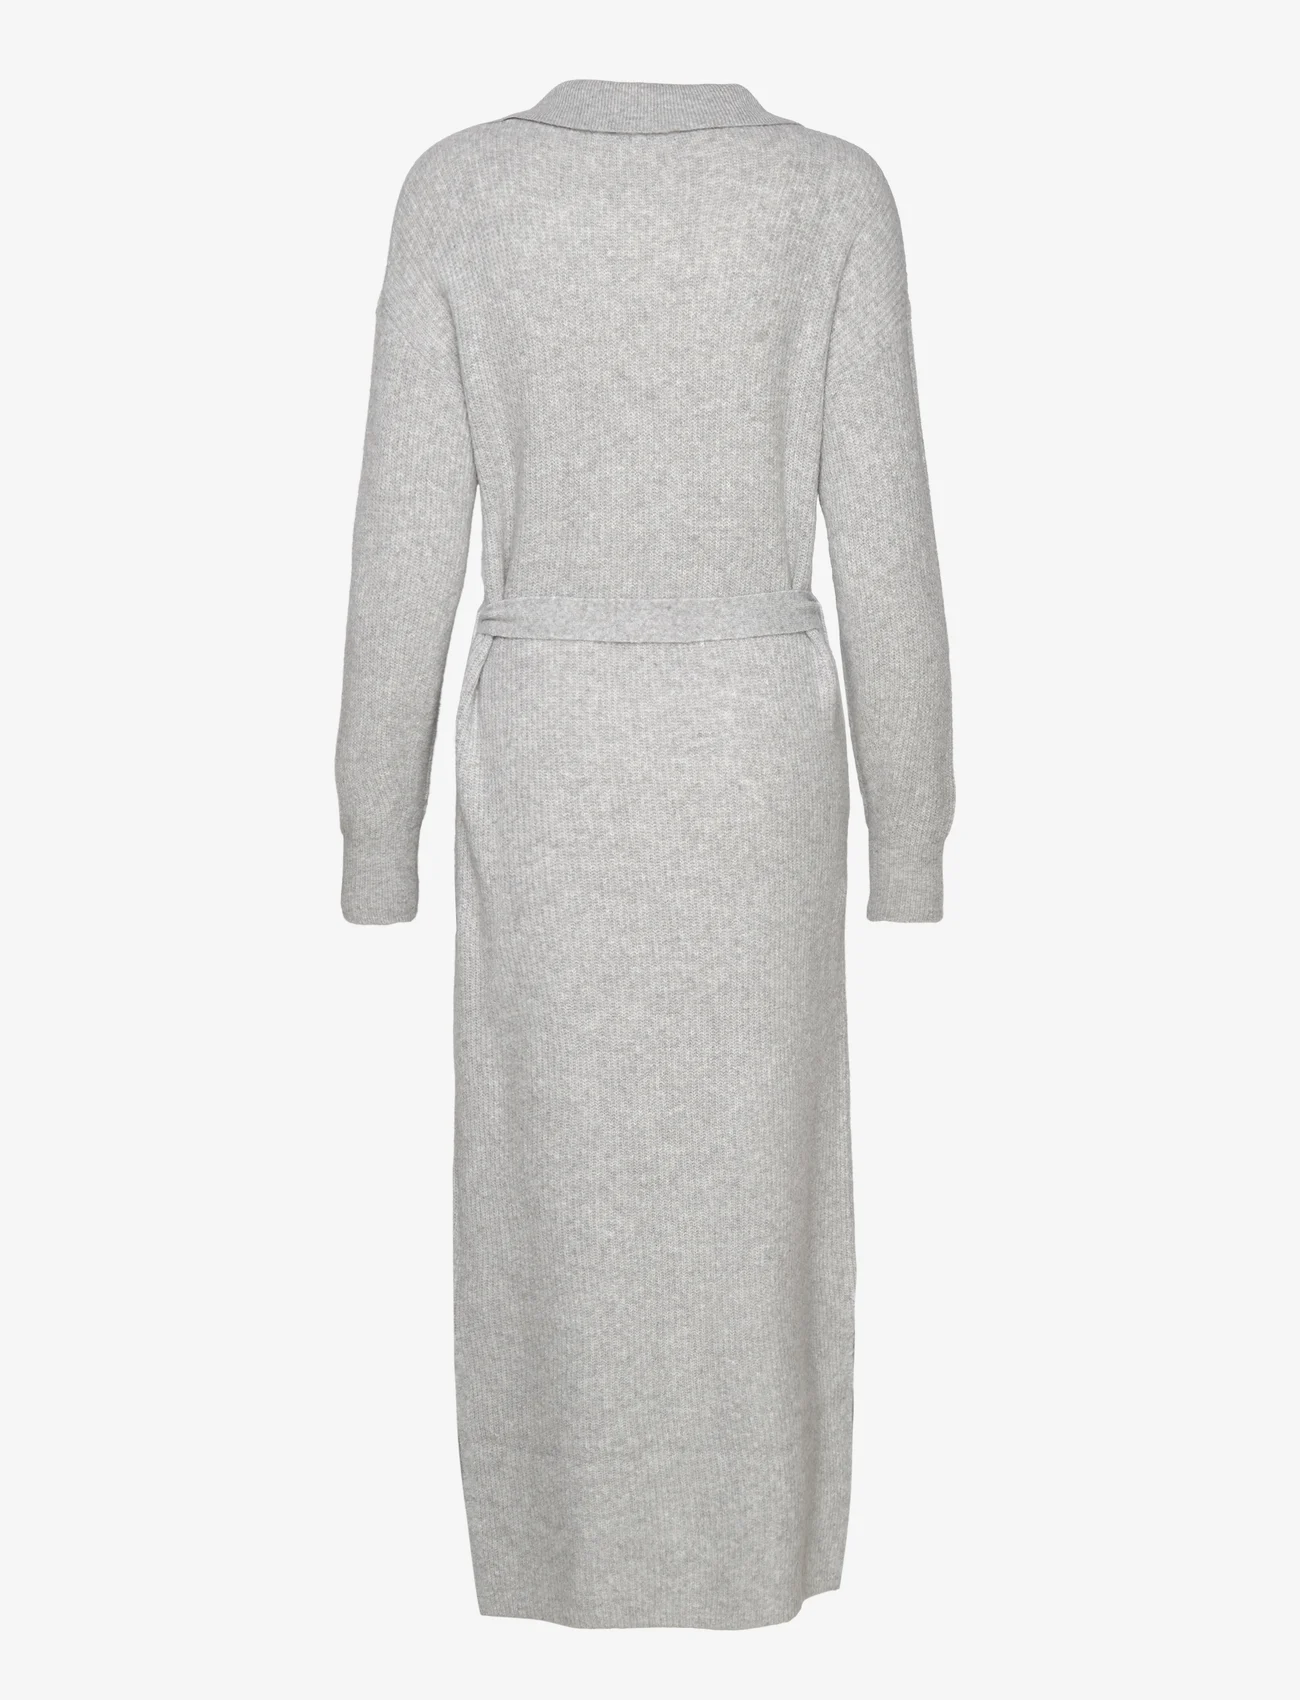 Esprit Casual - Belted midi dress, wool blend - strickkleider - light grey 5 - 1